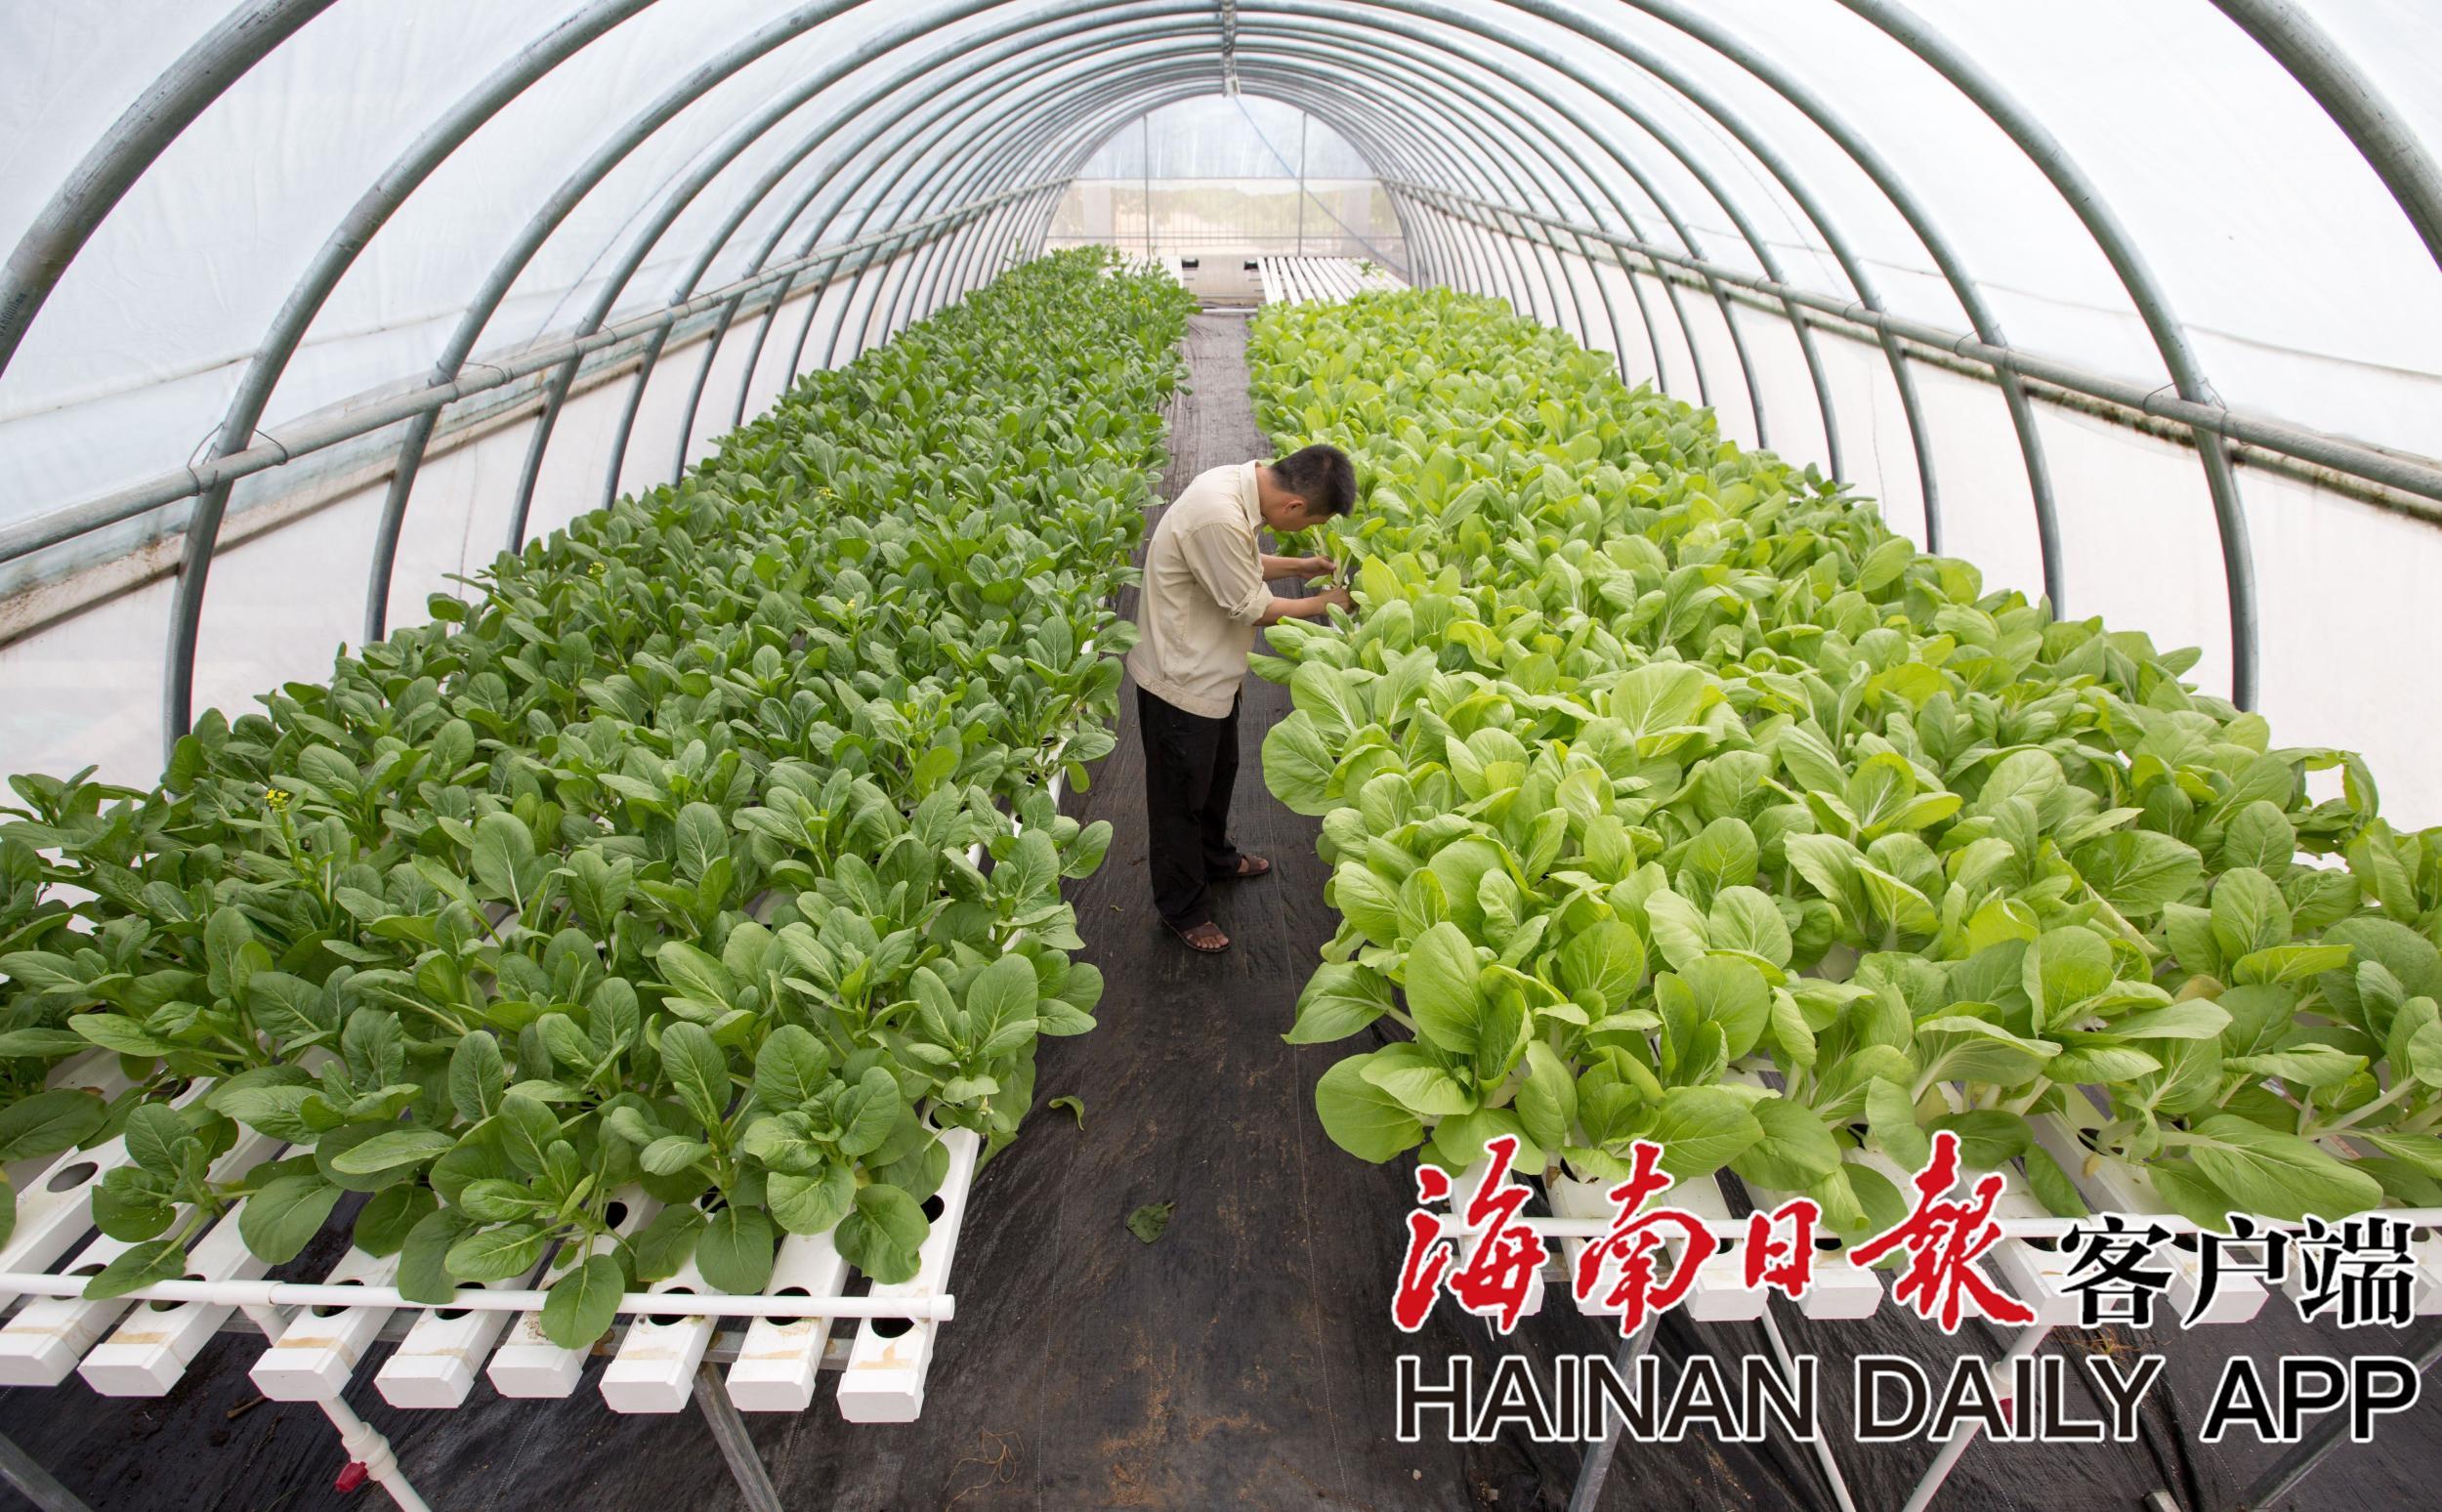 三亚利用水耕栽培技术种植蔬菜 大棚可抗14级台风